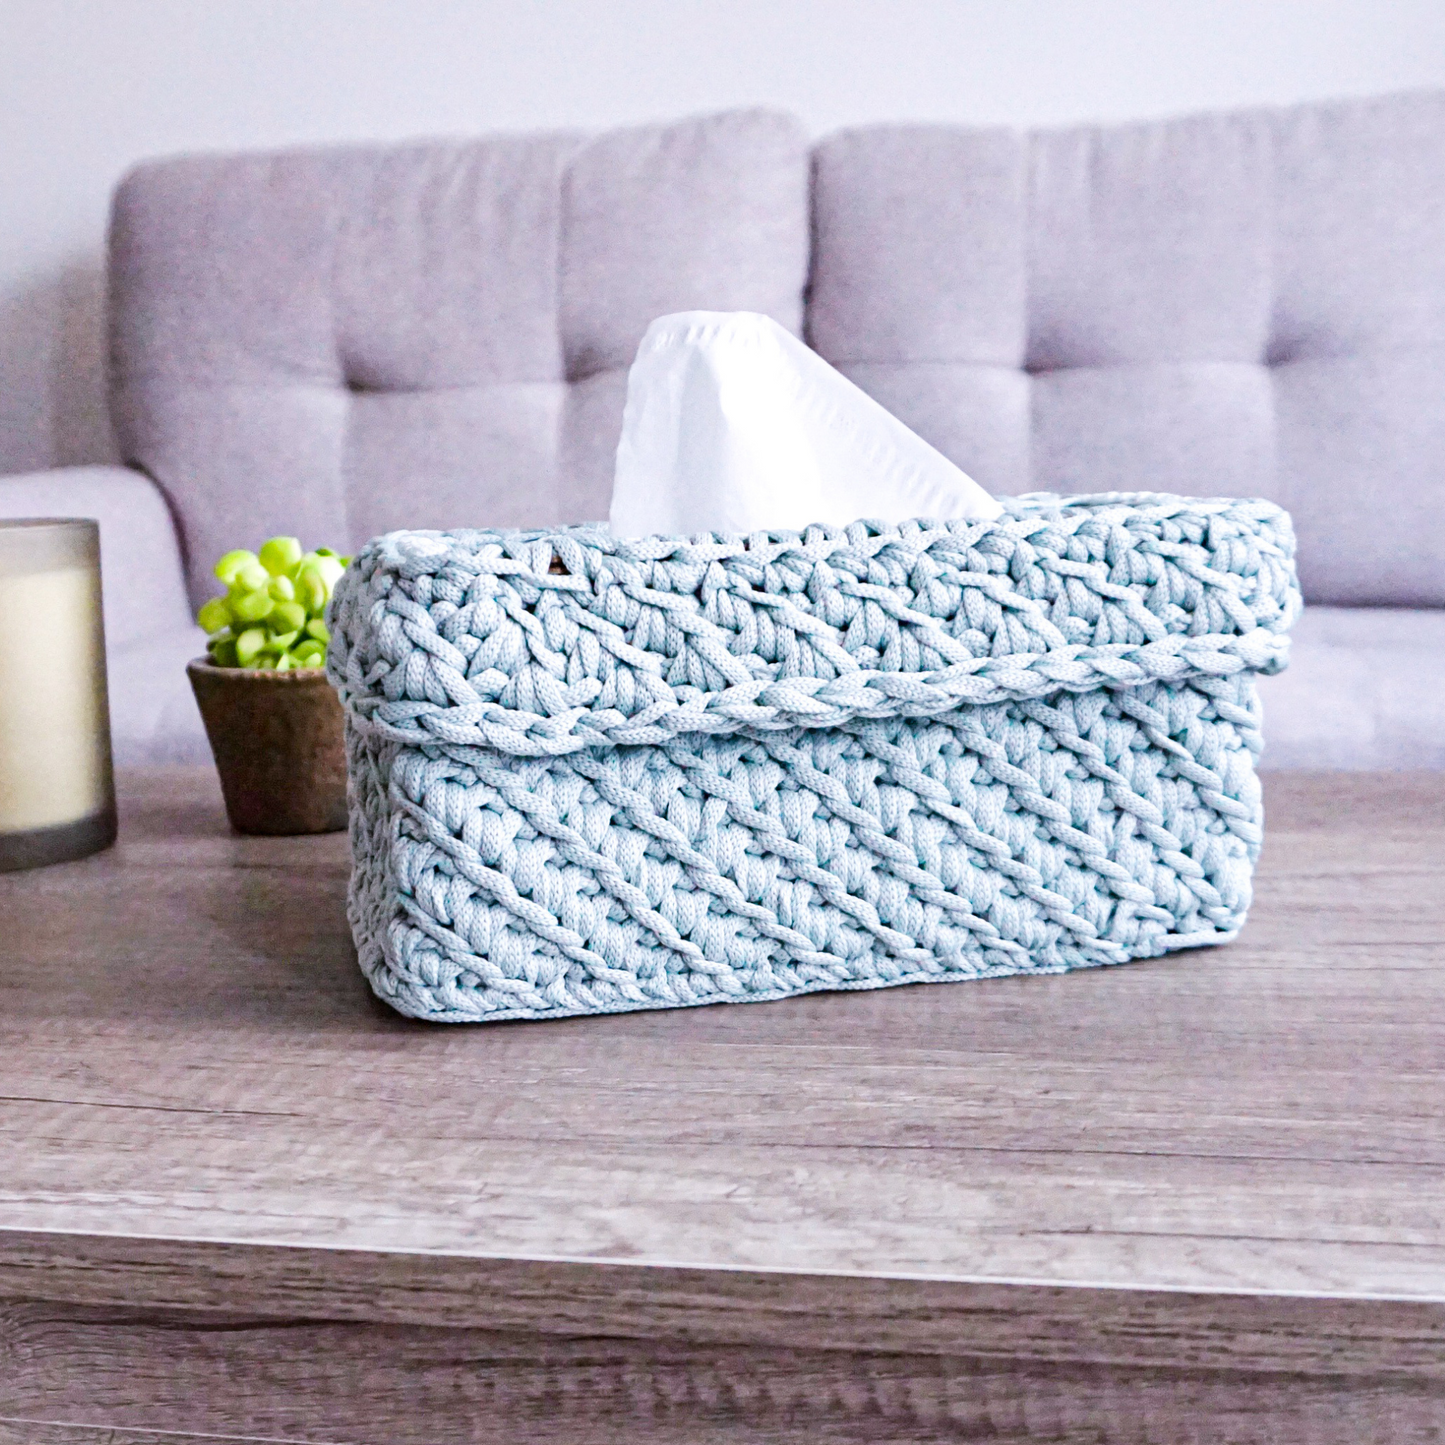 Rectangular Wooden base for crochet tissue box